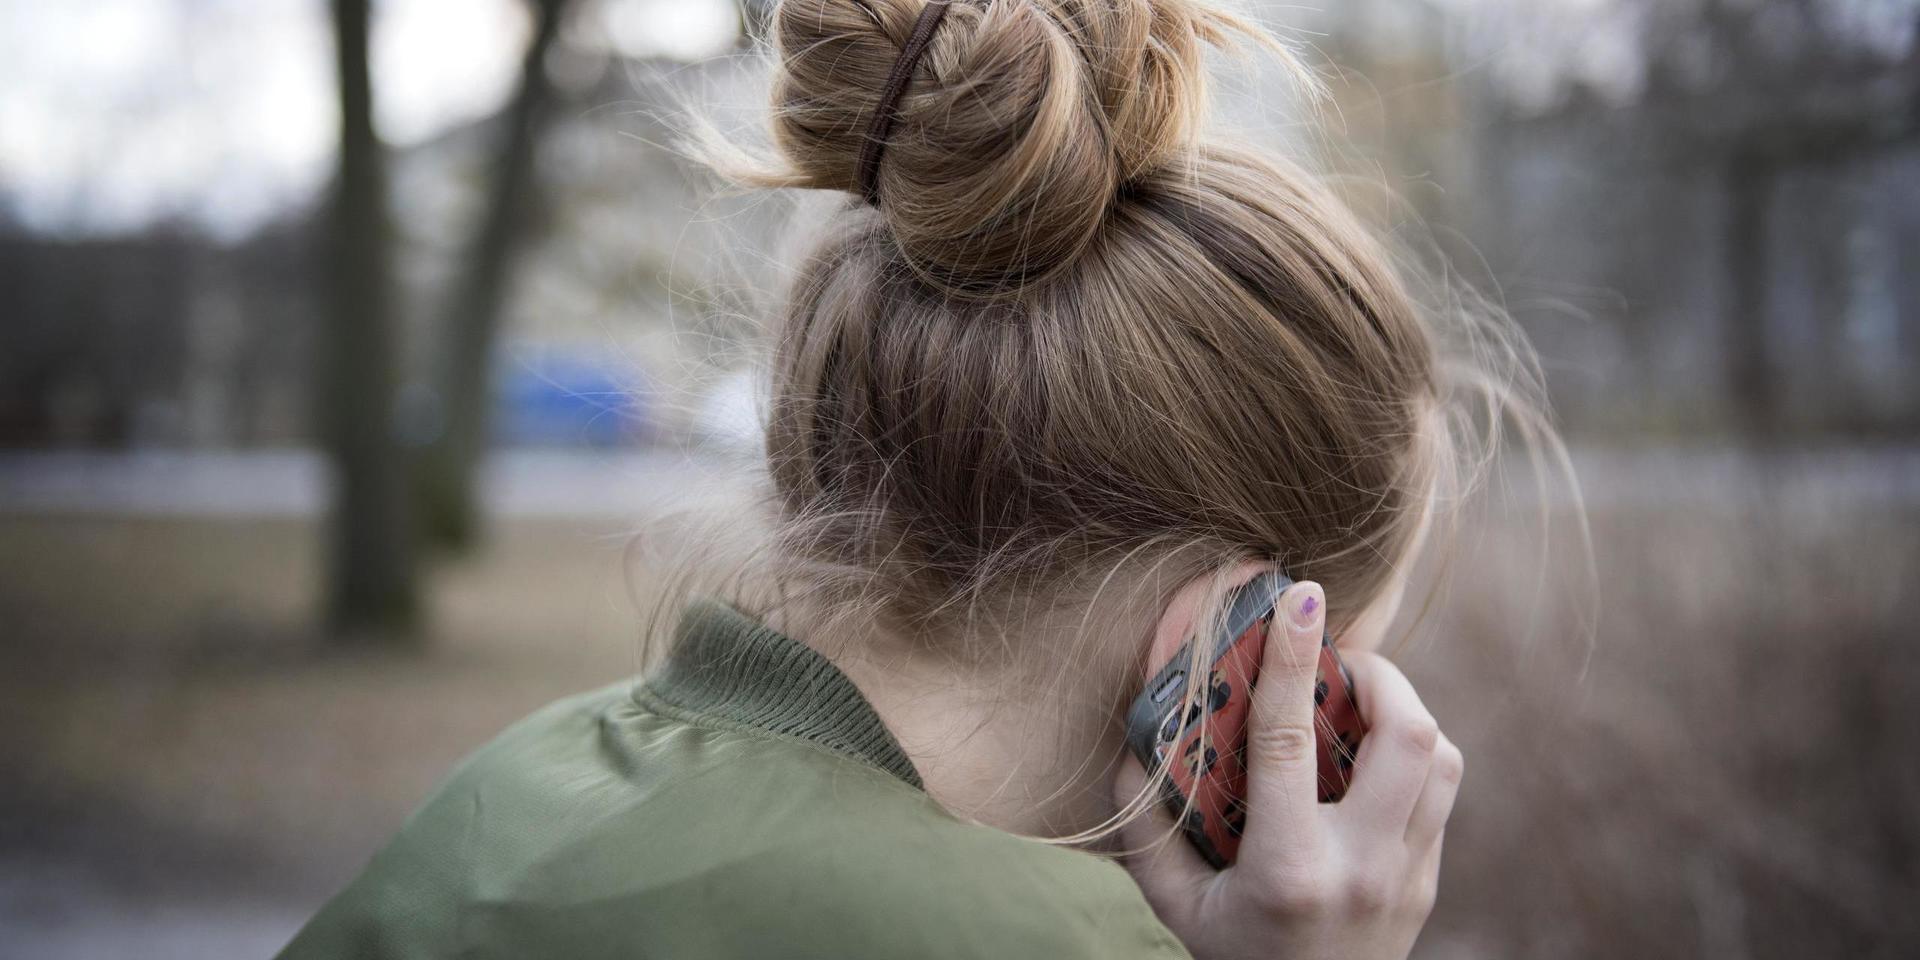 Gammal som ung som är orolig och vill prata med någon kan ringa till Röda Korsets nya stödtelefon. Arkivbild.